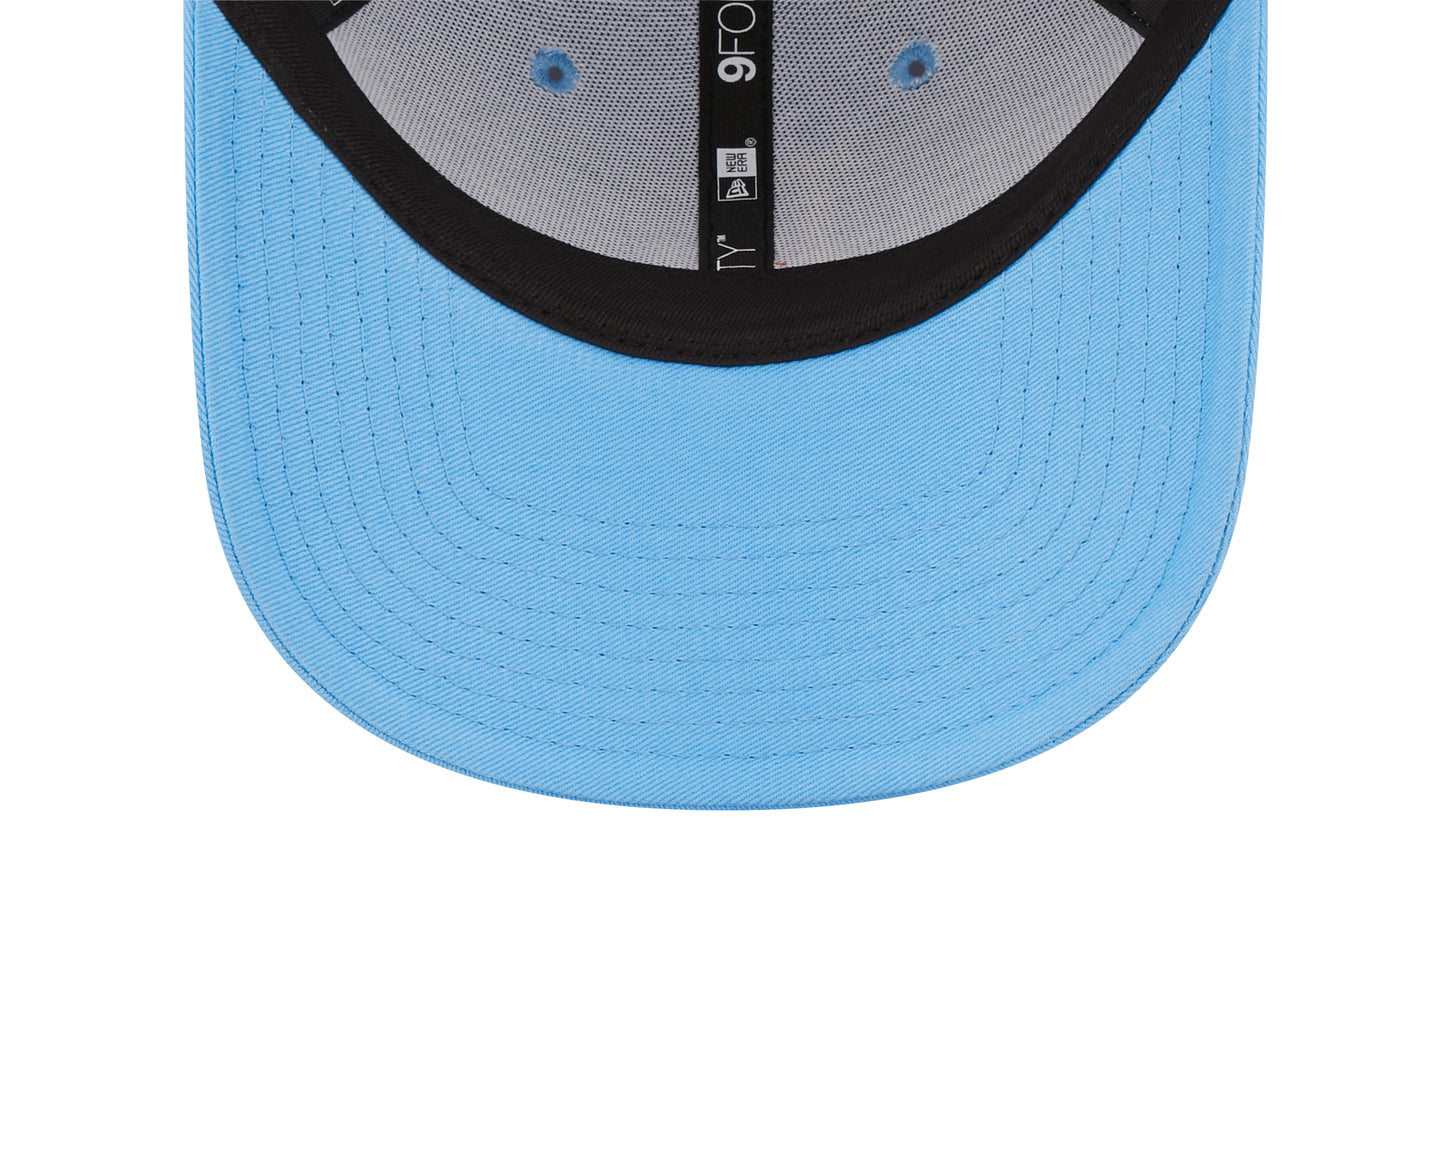 Los Angeles Dodgers 9Forty Cap League Essentials - Light Blue - Headz Up 